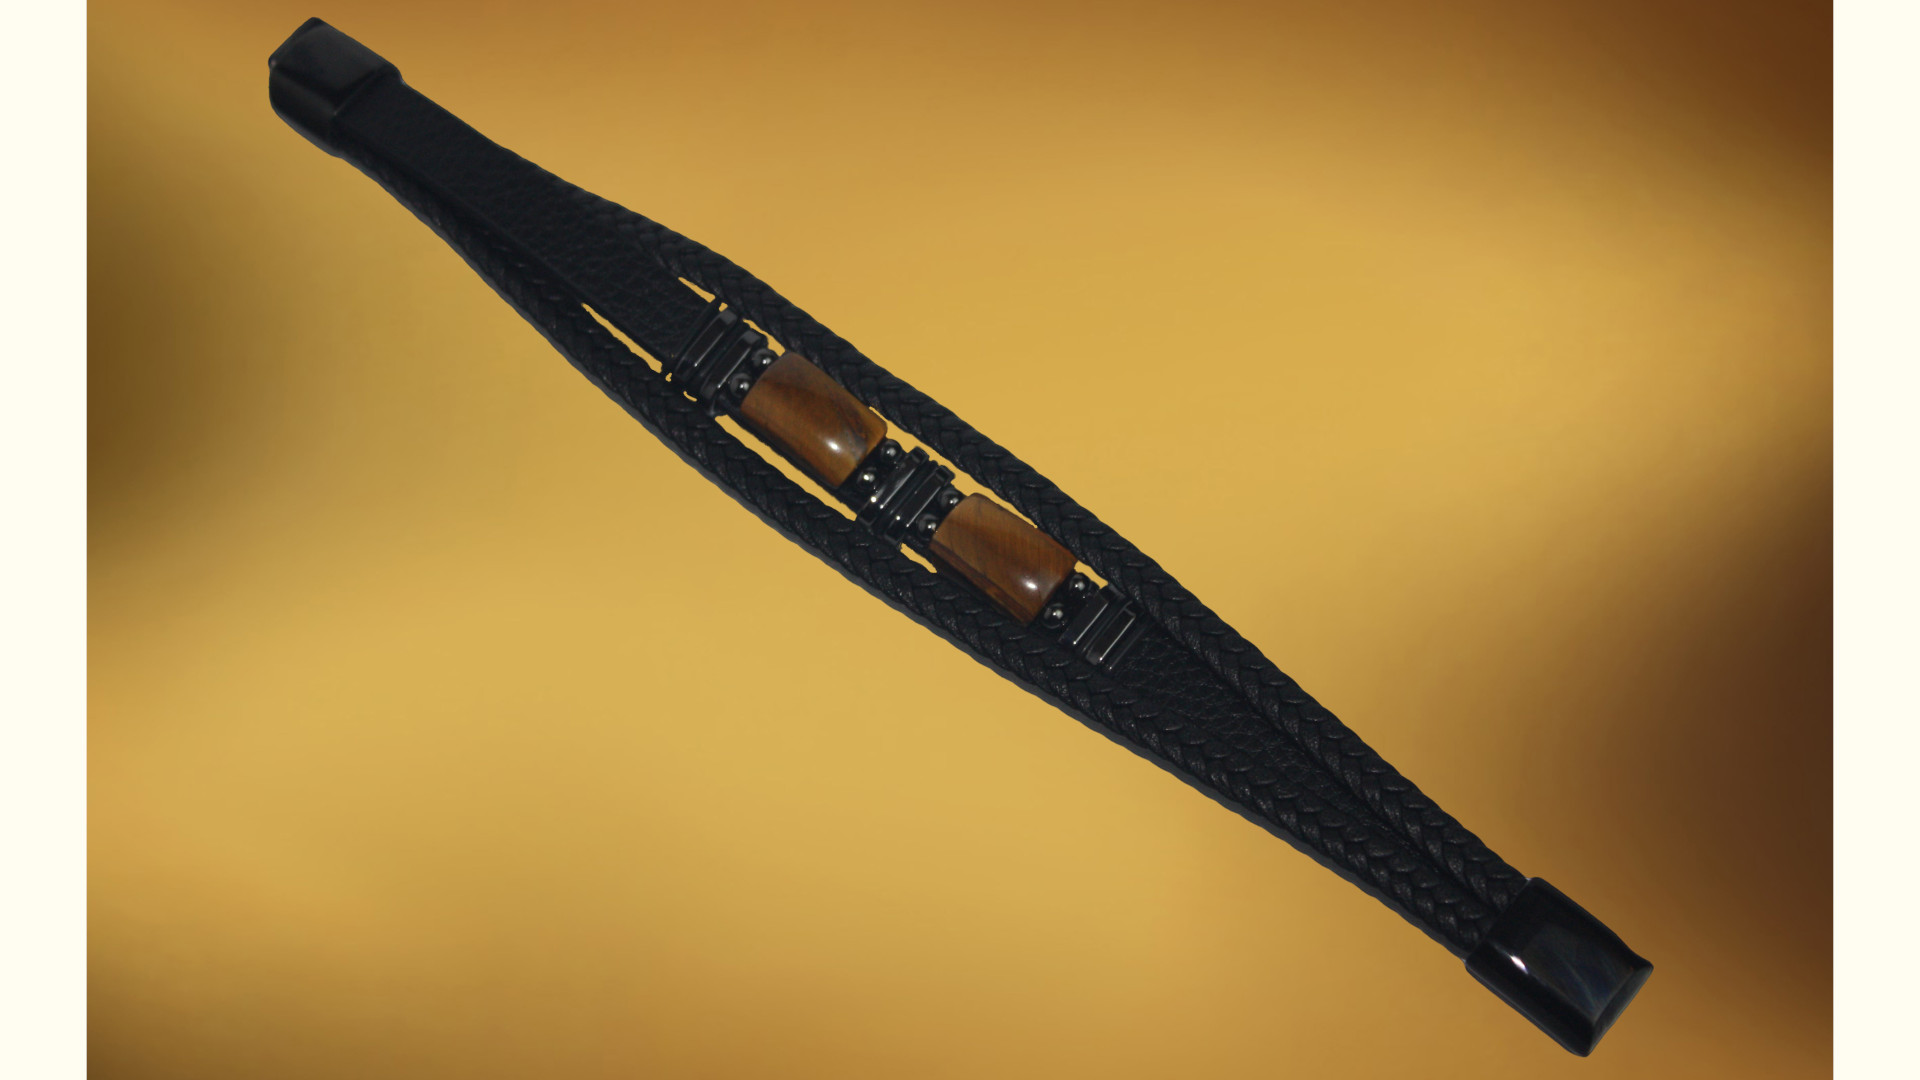 Herrenarmband aus Leder mit Tigerauge-Perlen: robust und ansprechend